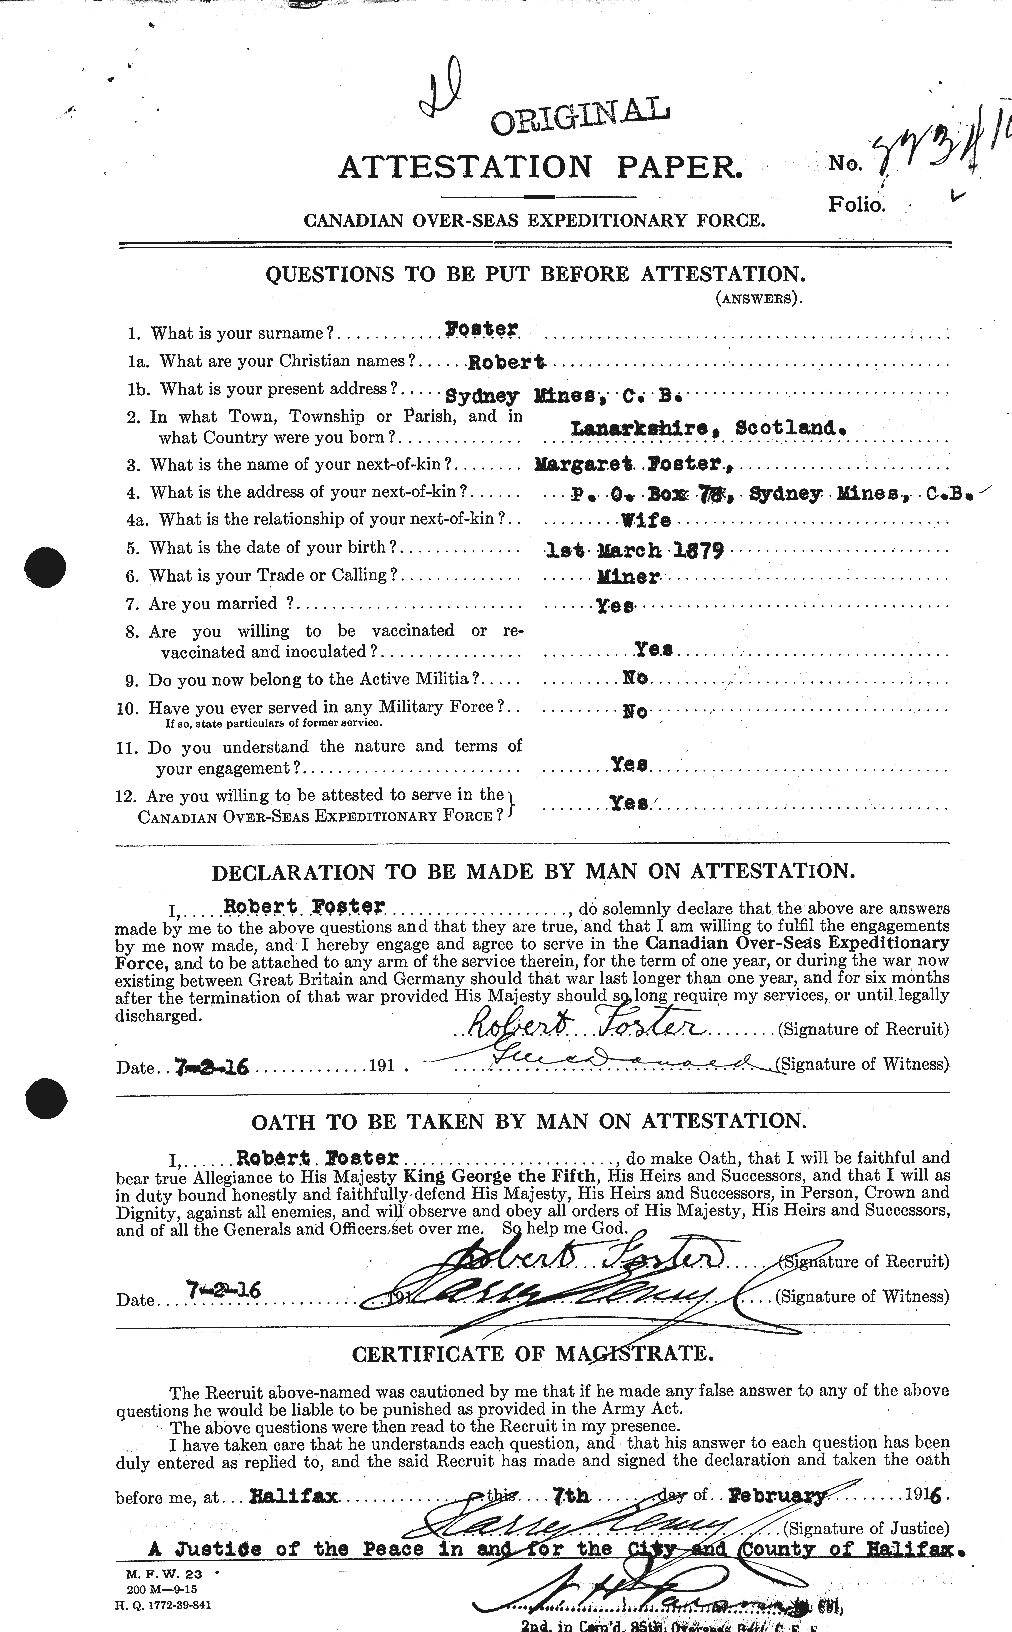 Dossiers du Personnel de la Première Guerre mondiale - CEC 335168a